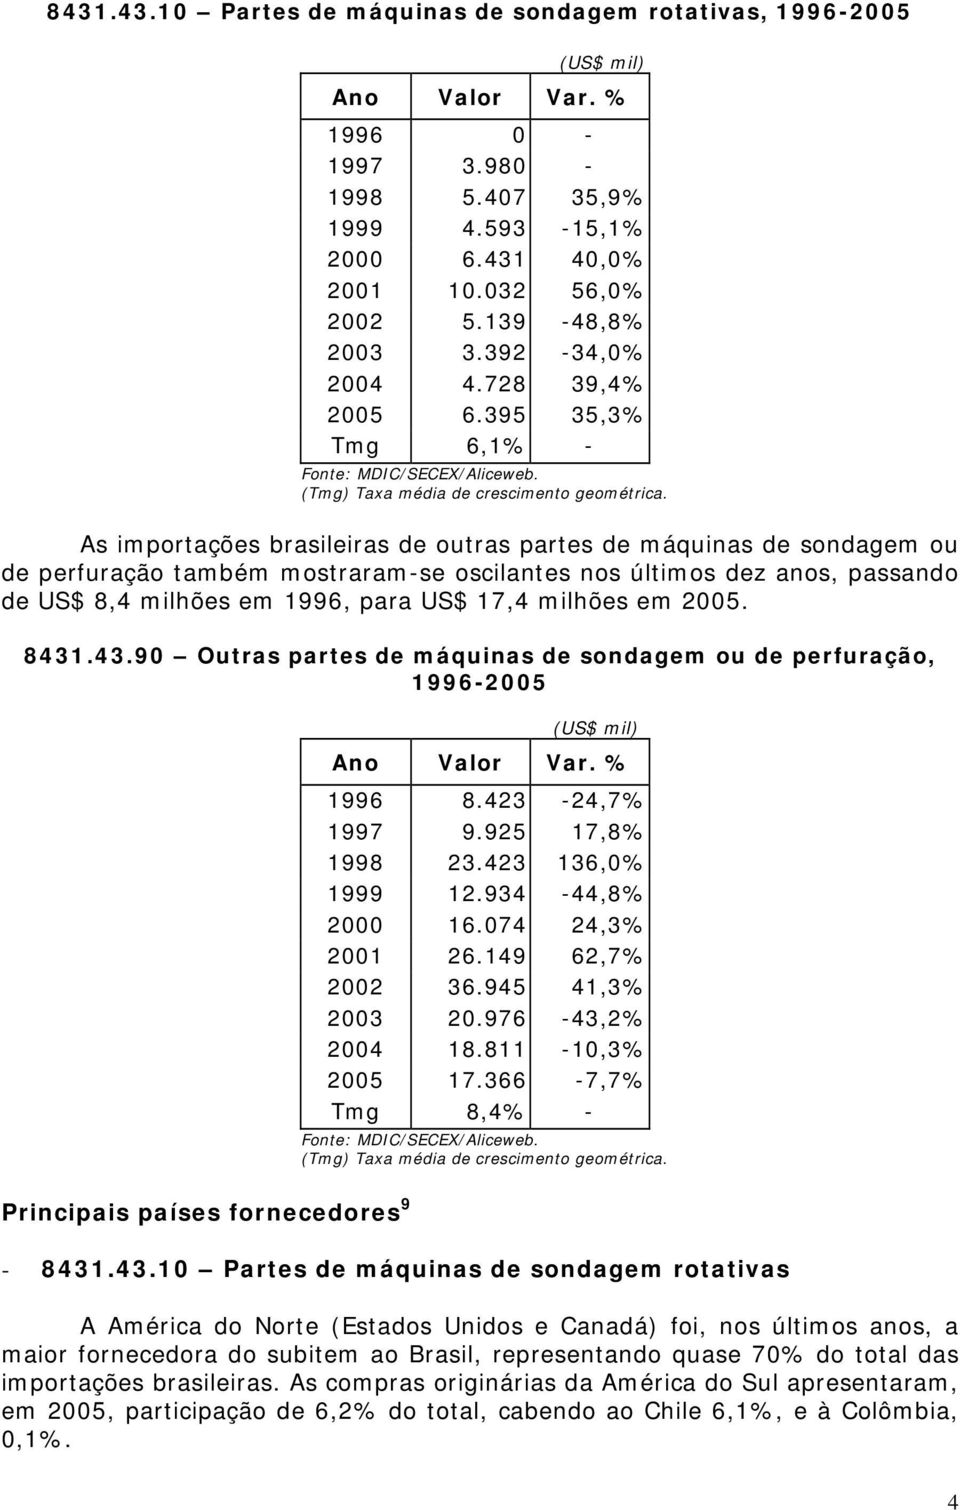 As importações brasileiras de outras partes de máquinas de sondagem ou de perfuração também mostraram-se oscilantes nos últimos dez anos, passando de US$ 8,4 milhões em 1996, para US$ 17,4 milhões em